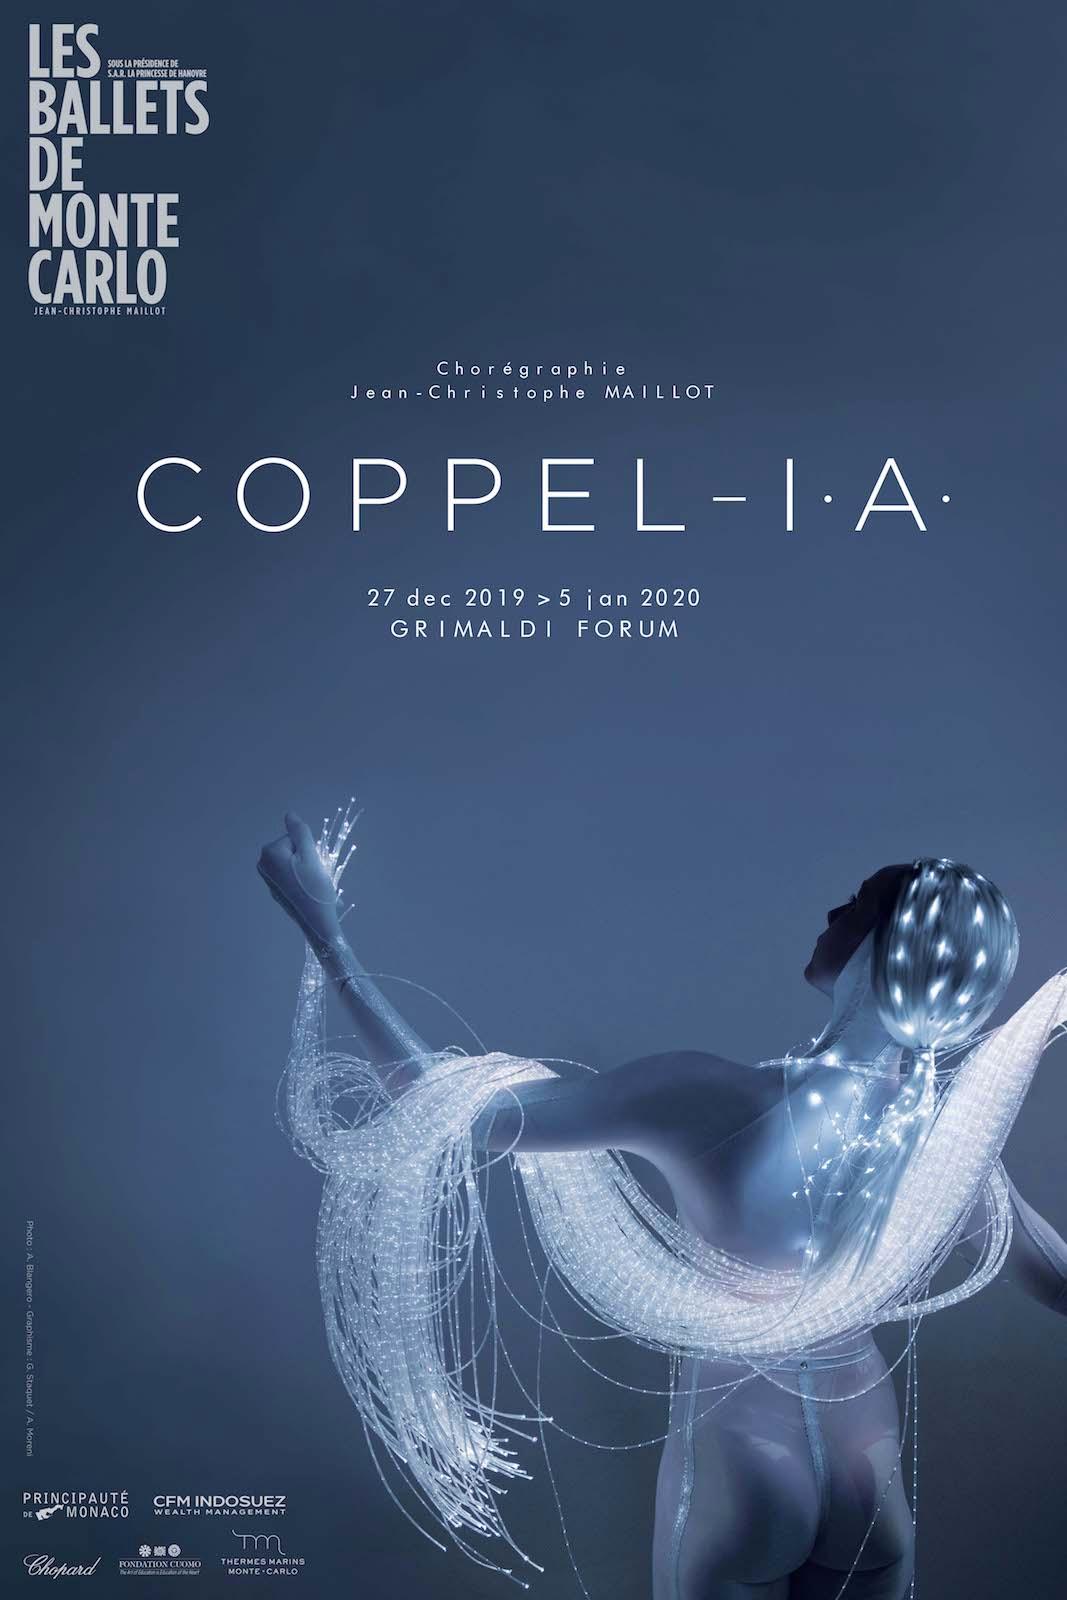 Coppél-i.A - création mondiale des Ballets de Monte-Carlo